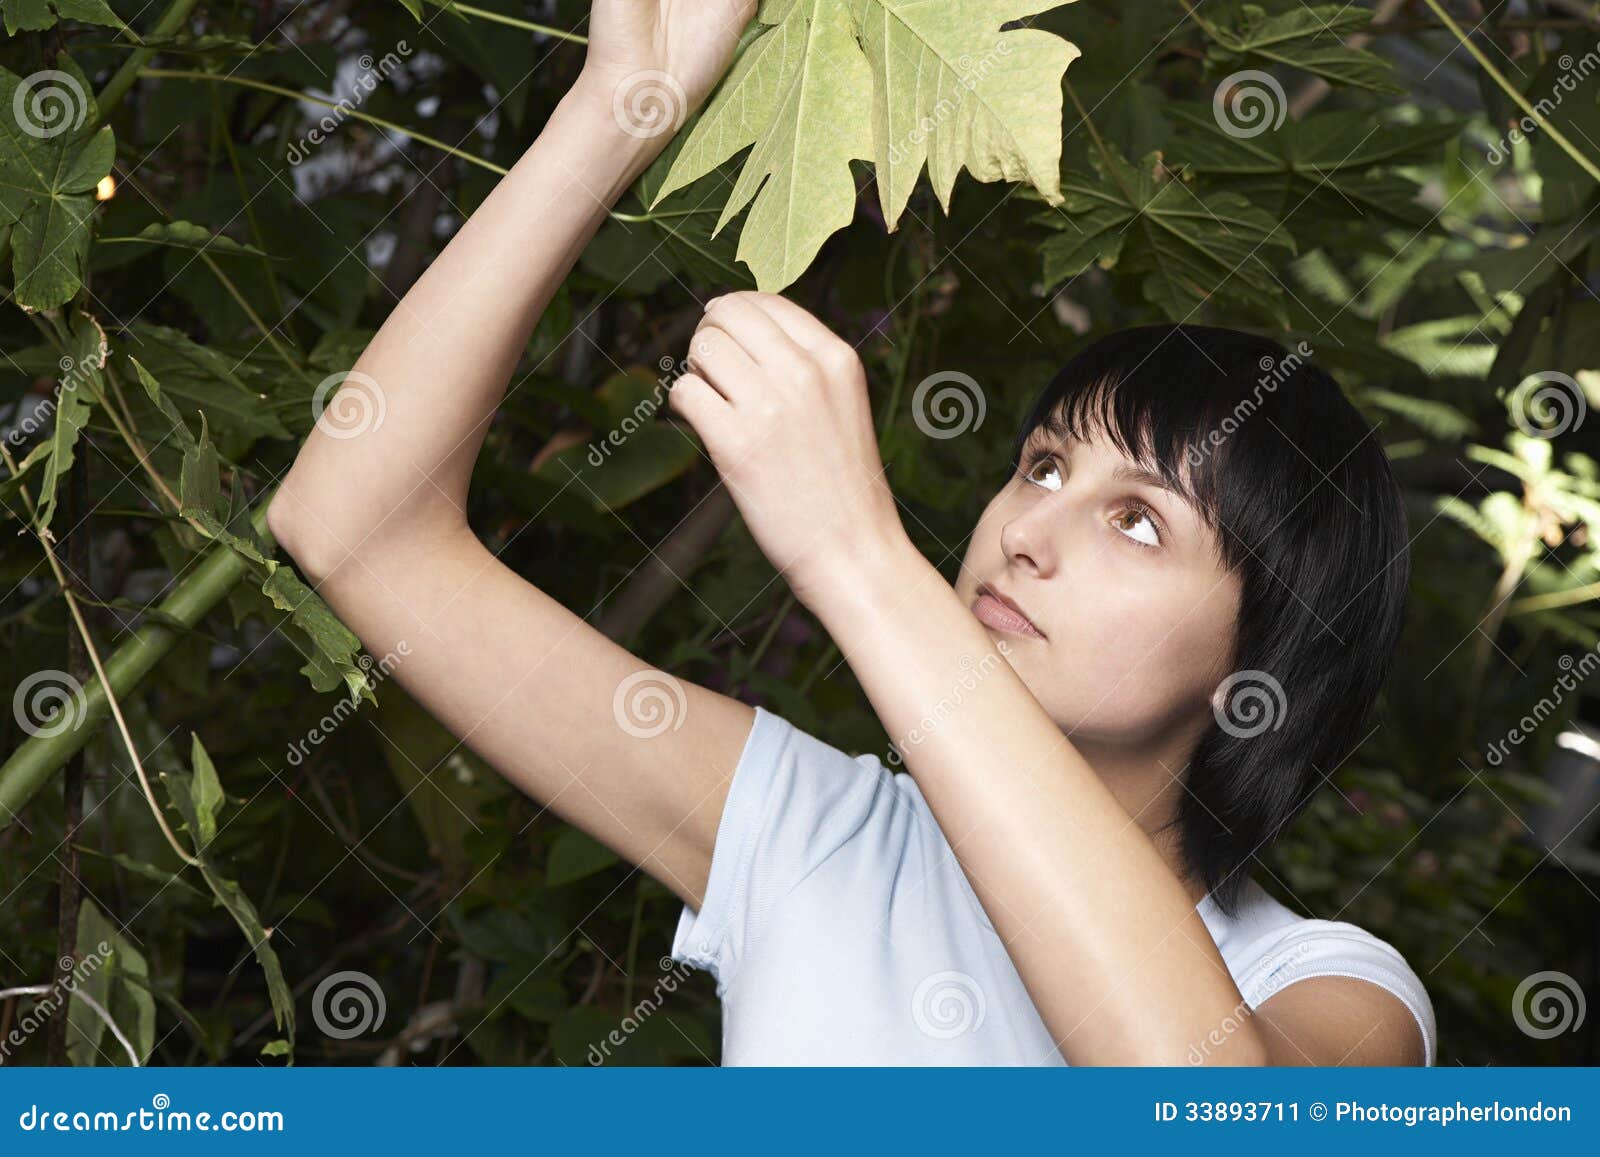 female botanist examining leaf